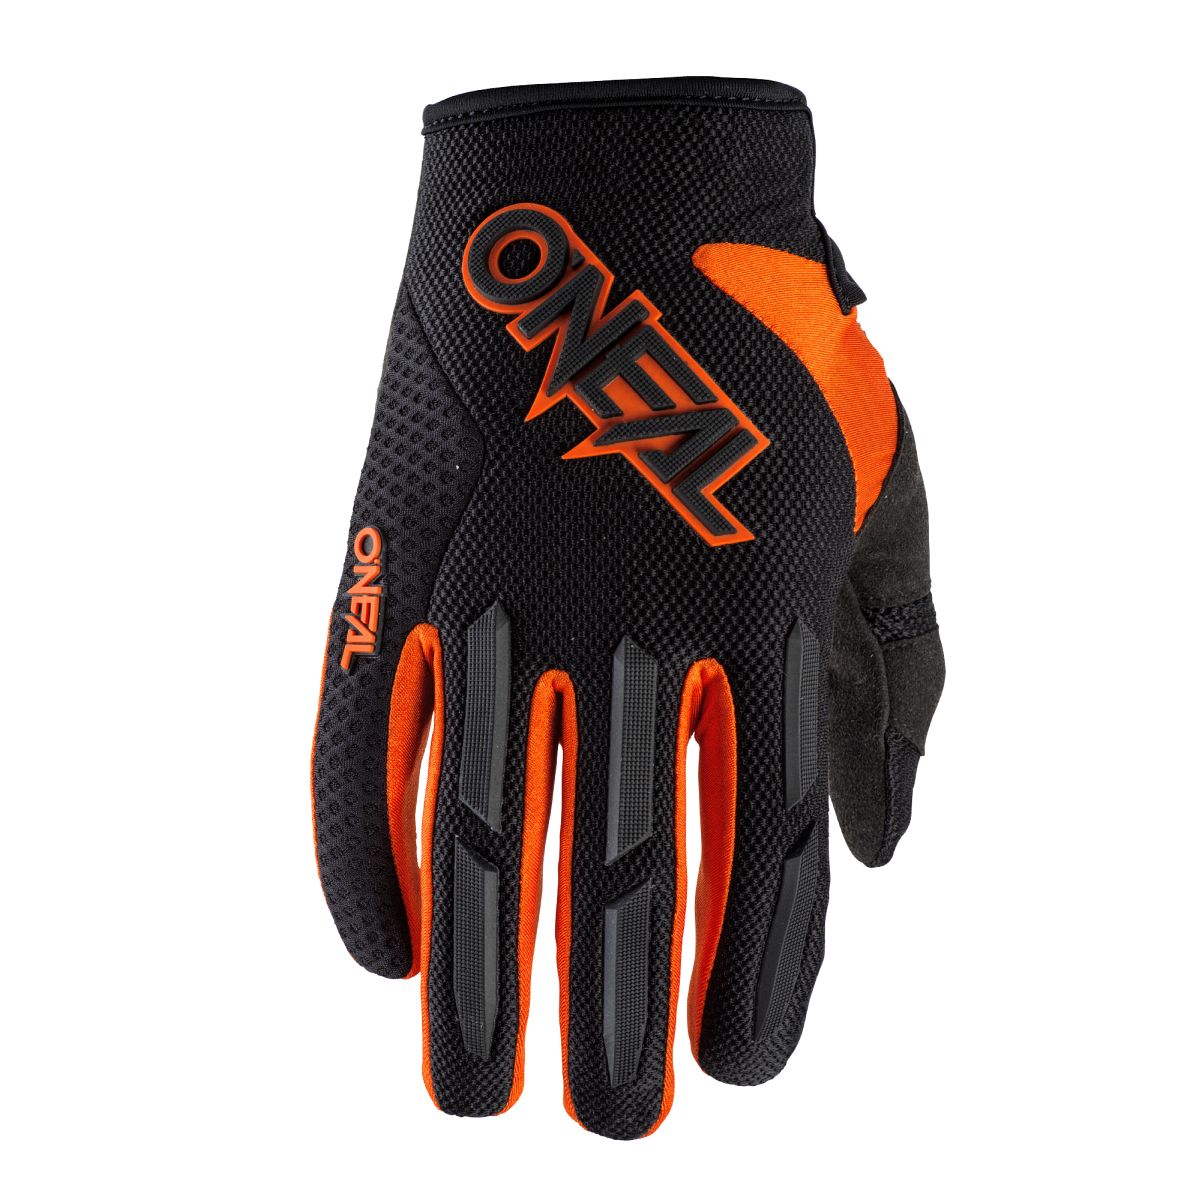 ONeal Element Youth Kinder MX DH FR Handschuhe schwarz/orange 2020 Oneal Größe 6 L 